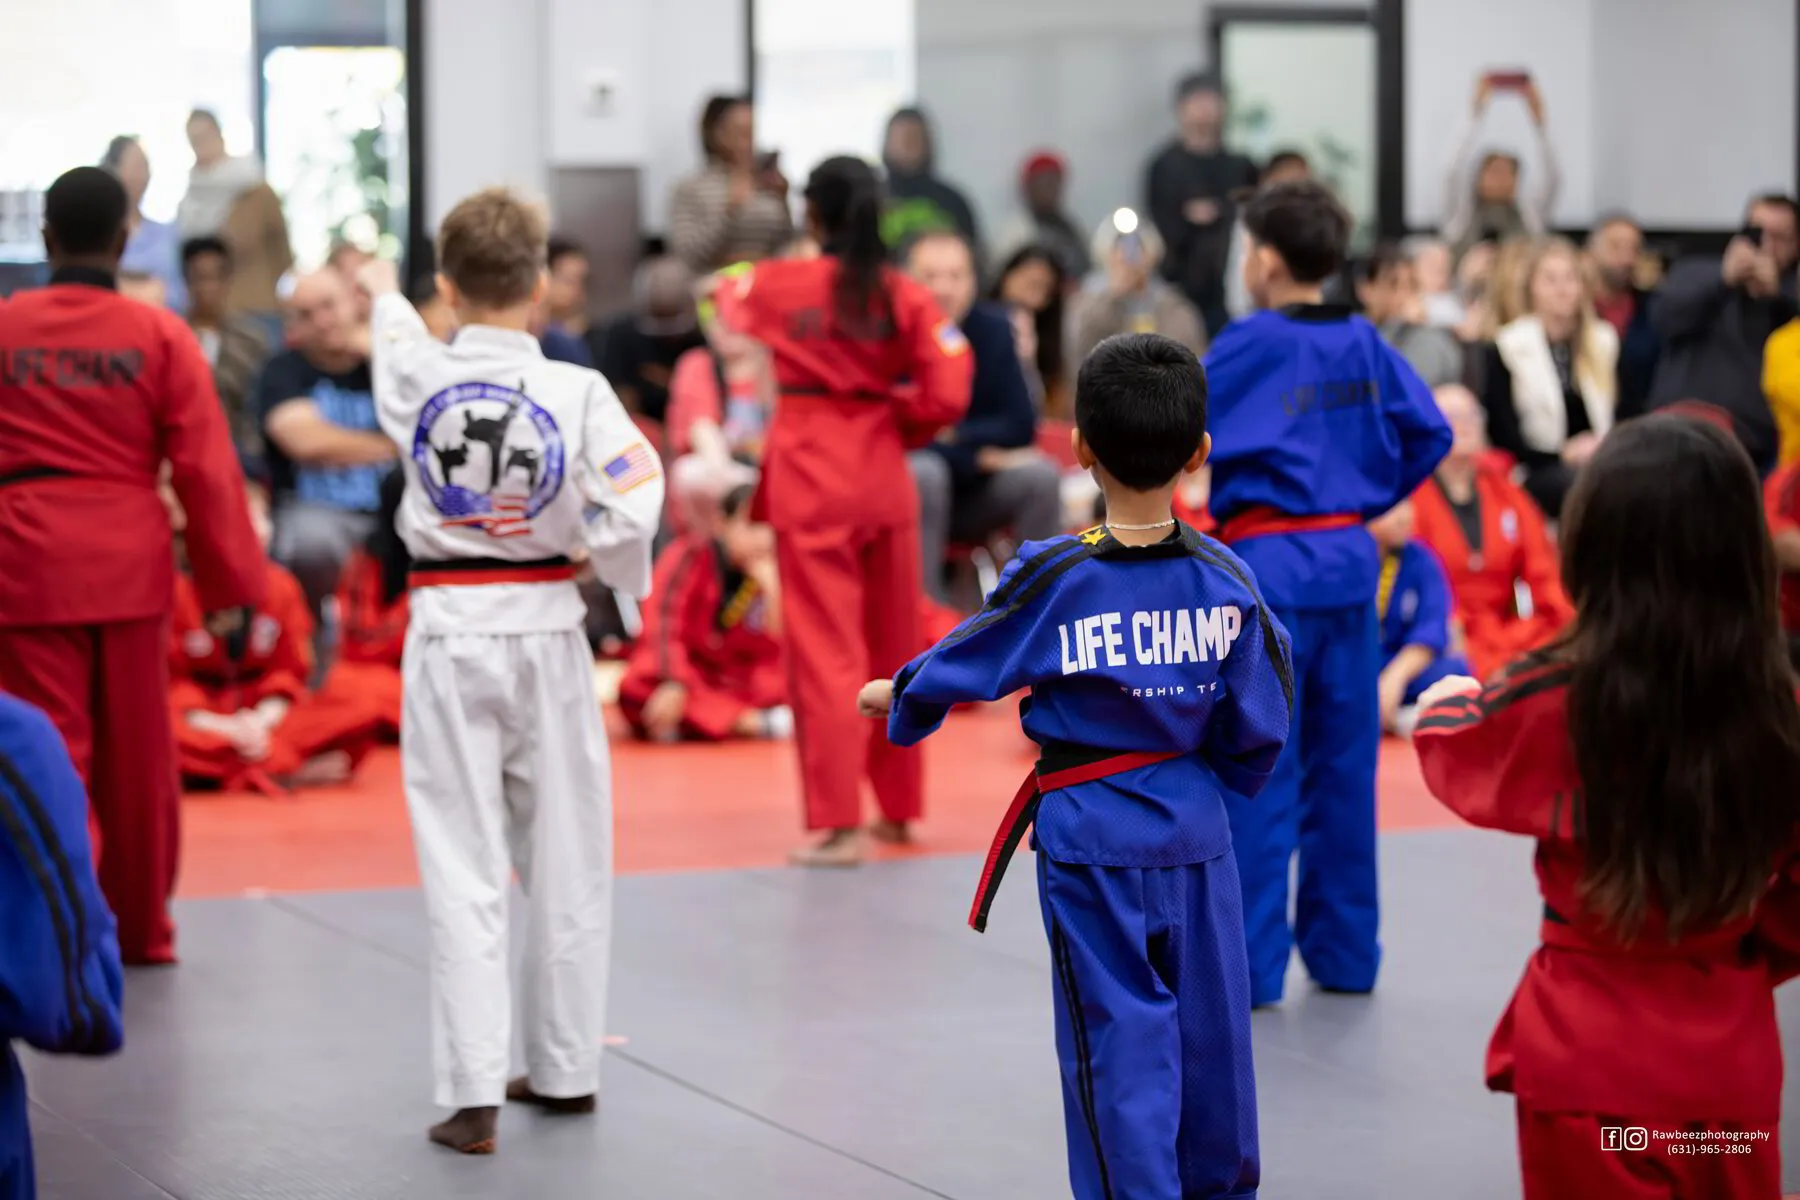 Martial arts schools in northern Virginia can help to increase self esteem